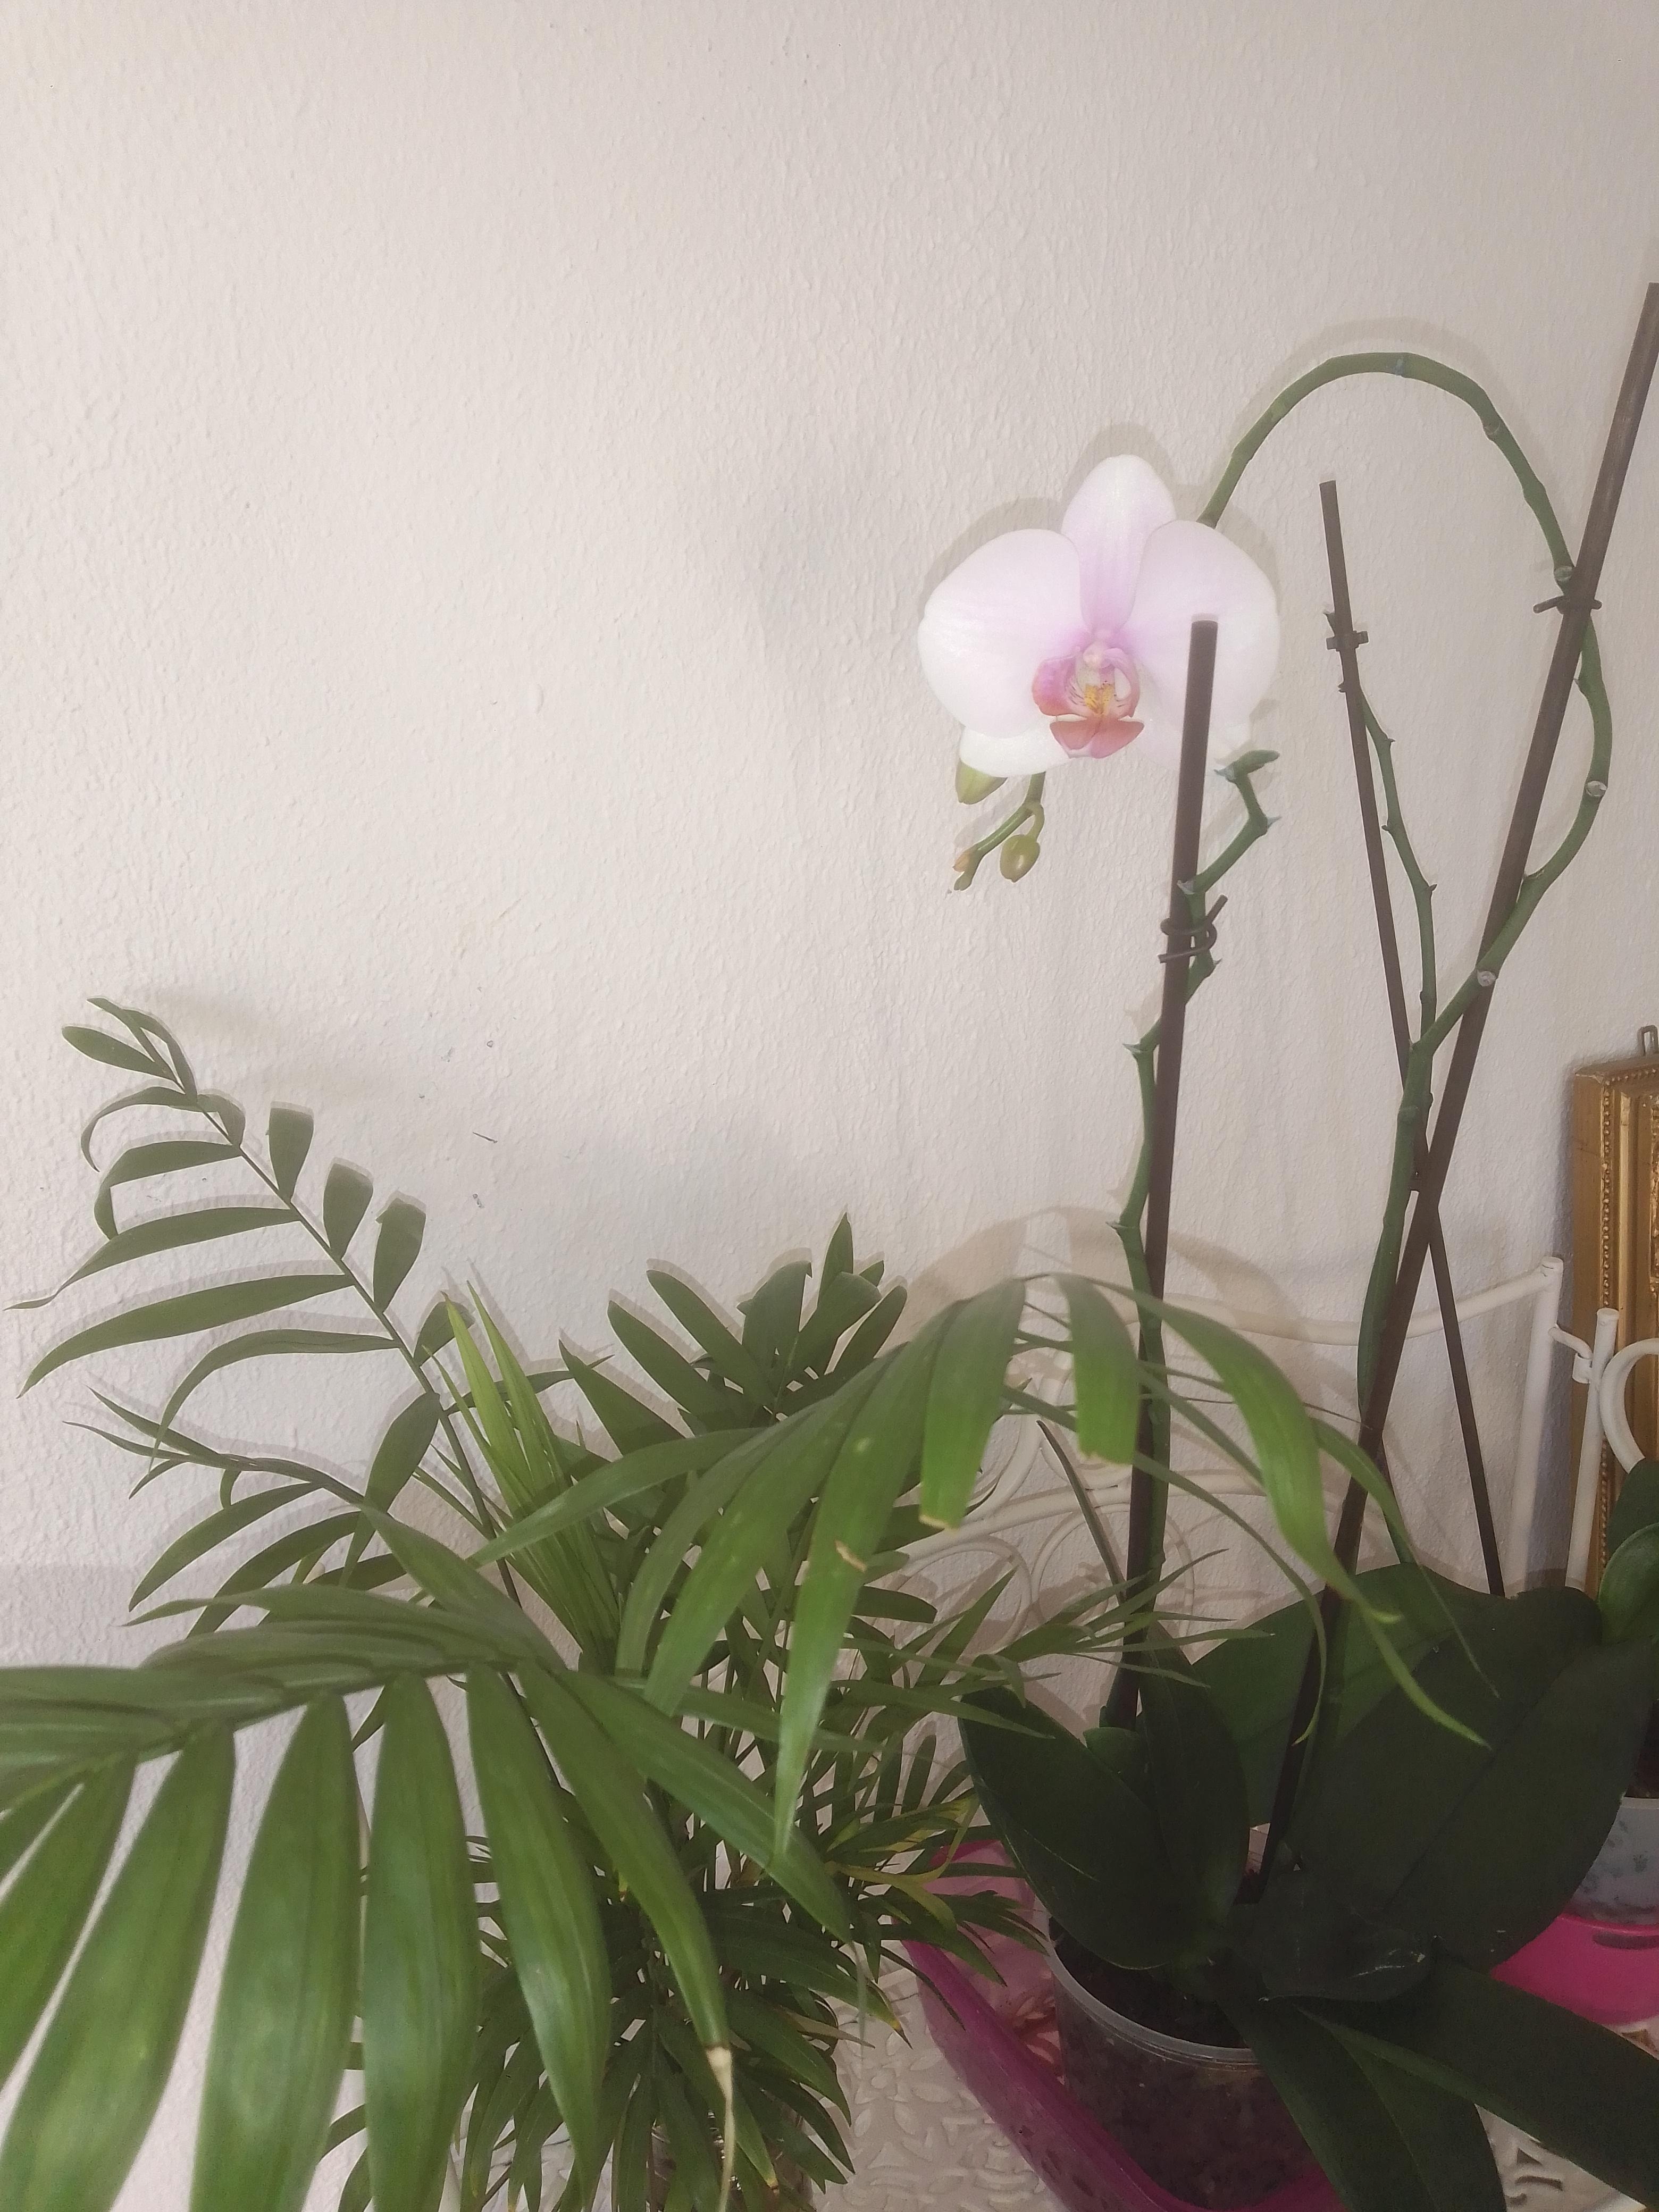 Mein Lieblingsraum 💚🌿🌺 ein bisschen Grün zu Hause hat noch niemanden geschadet
#orchideen #plantlovers